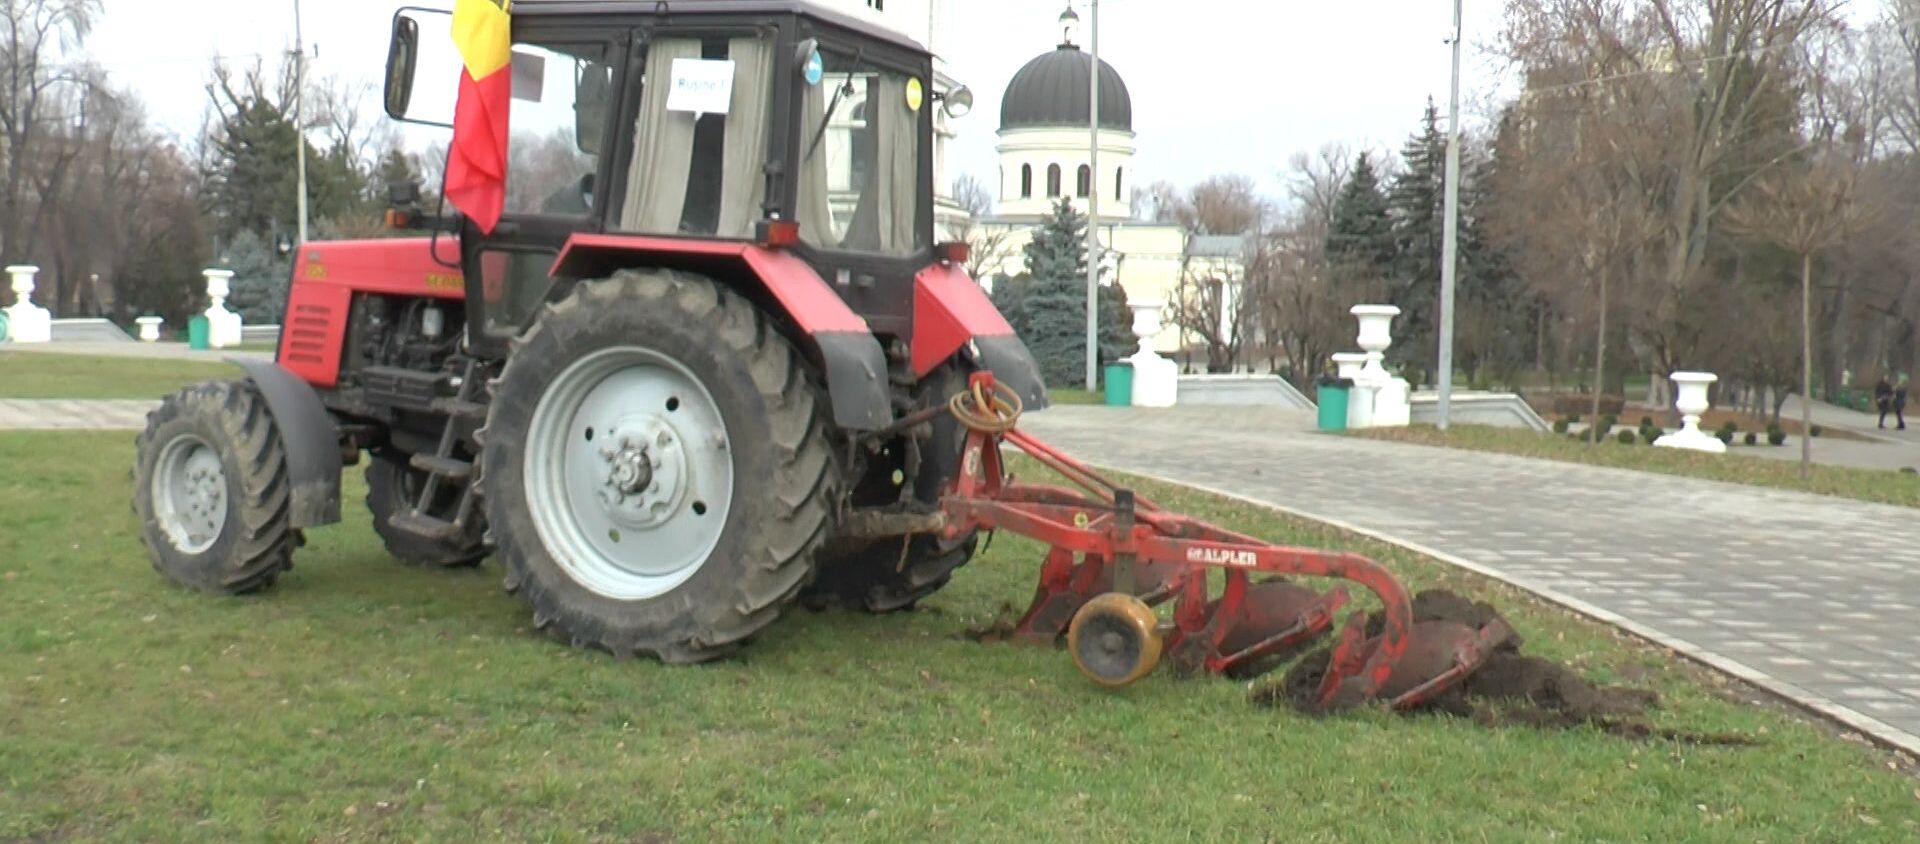 Бешенный трактор:  как вспахали газон в главном парке Кишинева - Sputnik Молдова, 1920, 22.12.2020